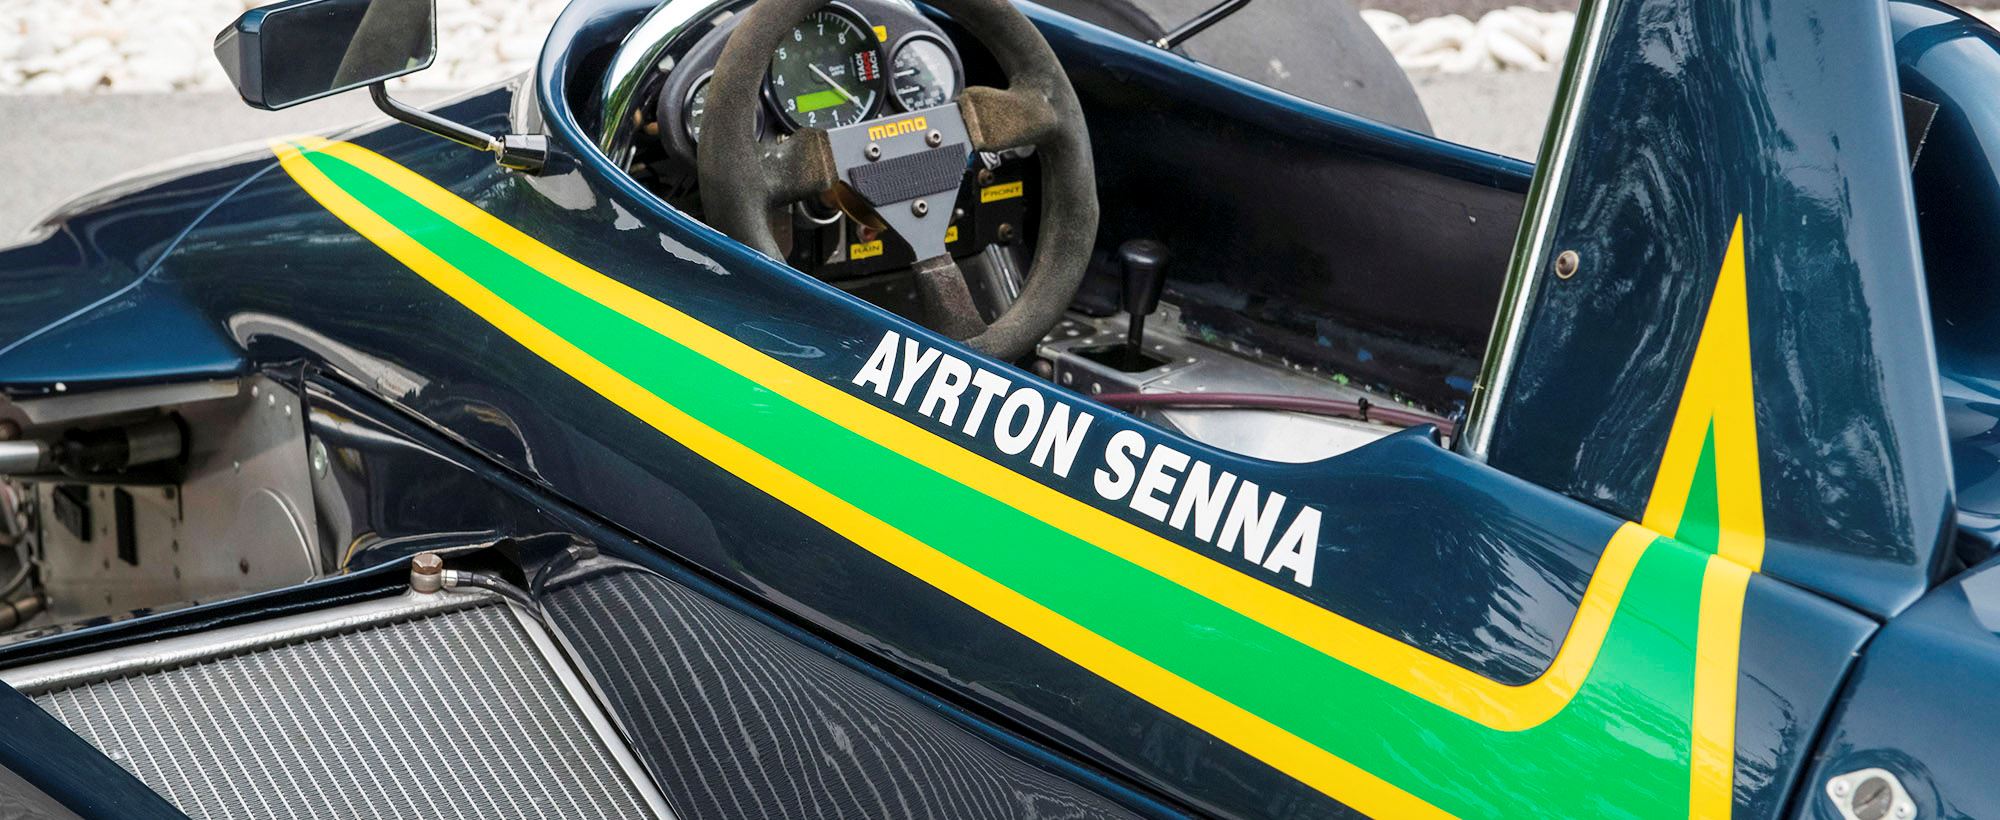 Ralt Senna 054.jpg